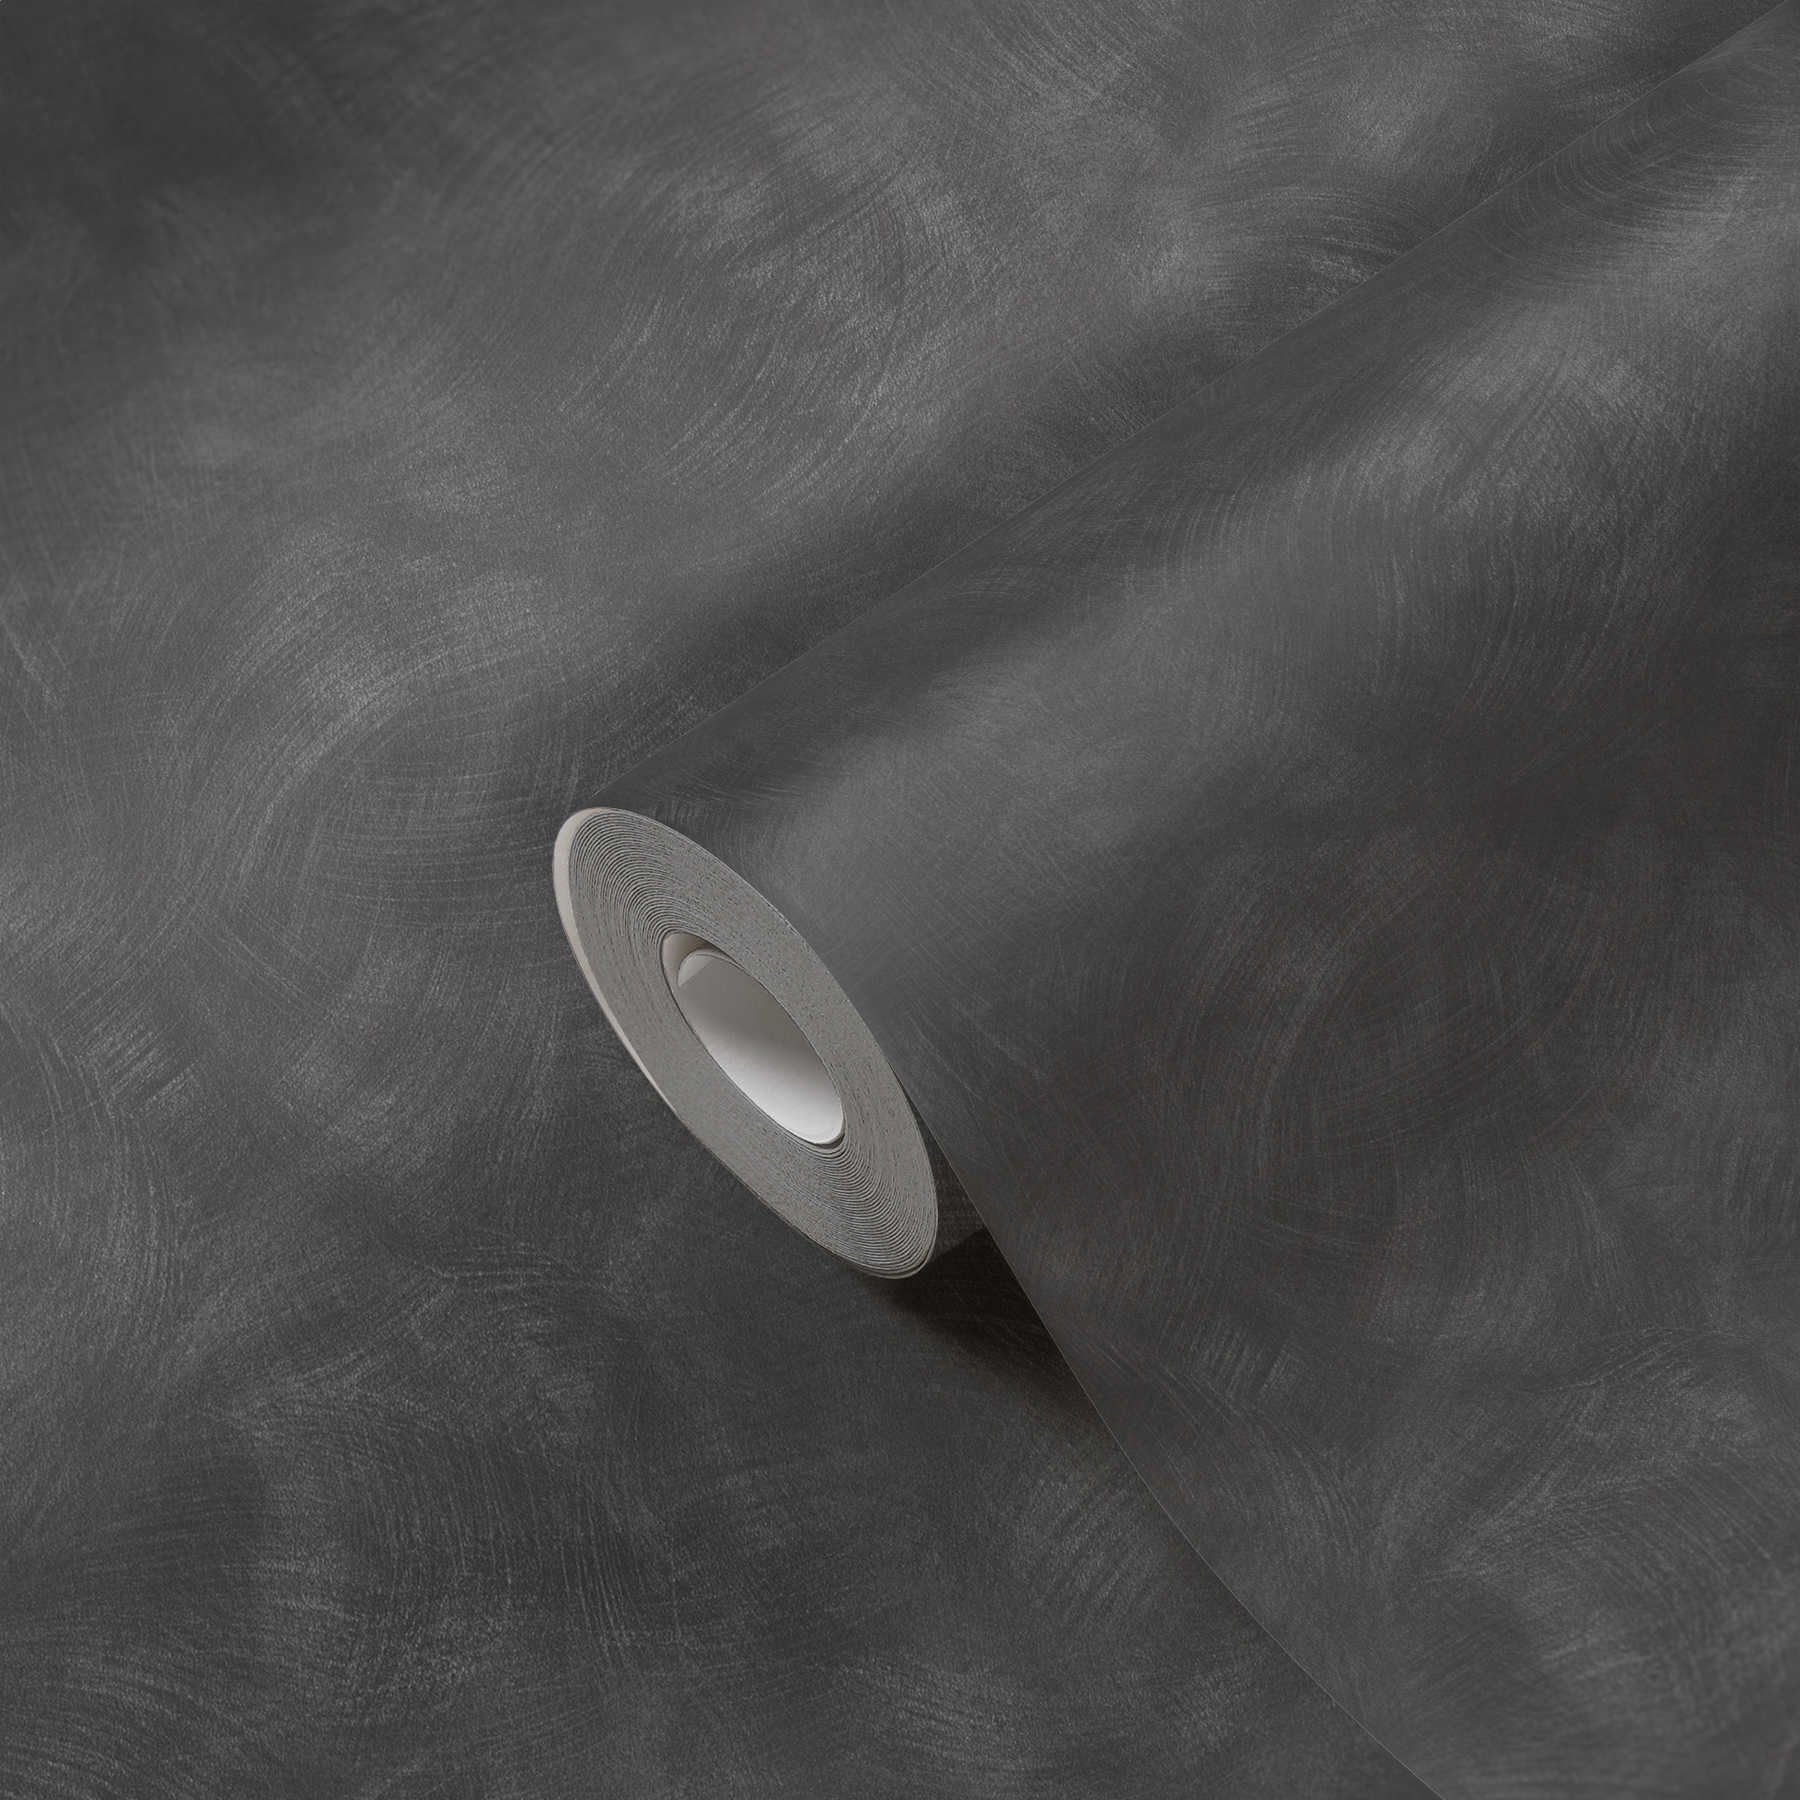             Antraciet behang met paneel look & veegvaste textuur - grijs
        